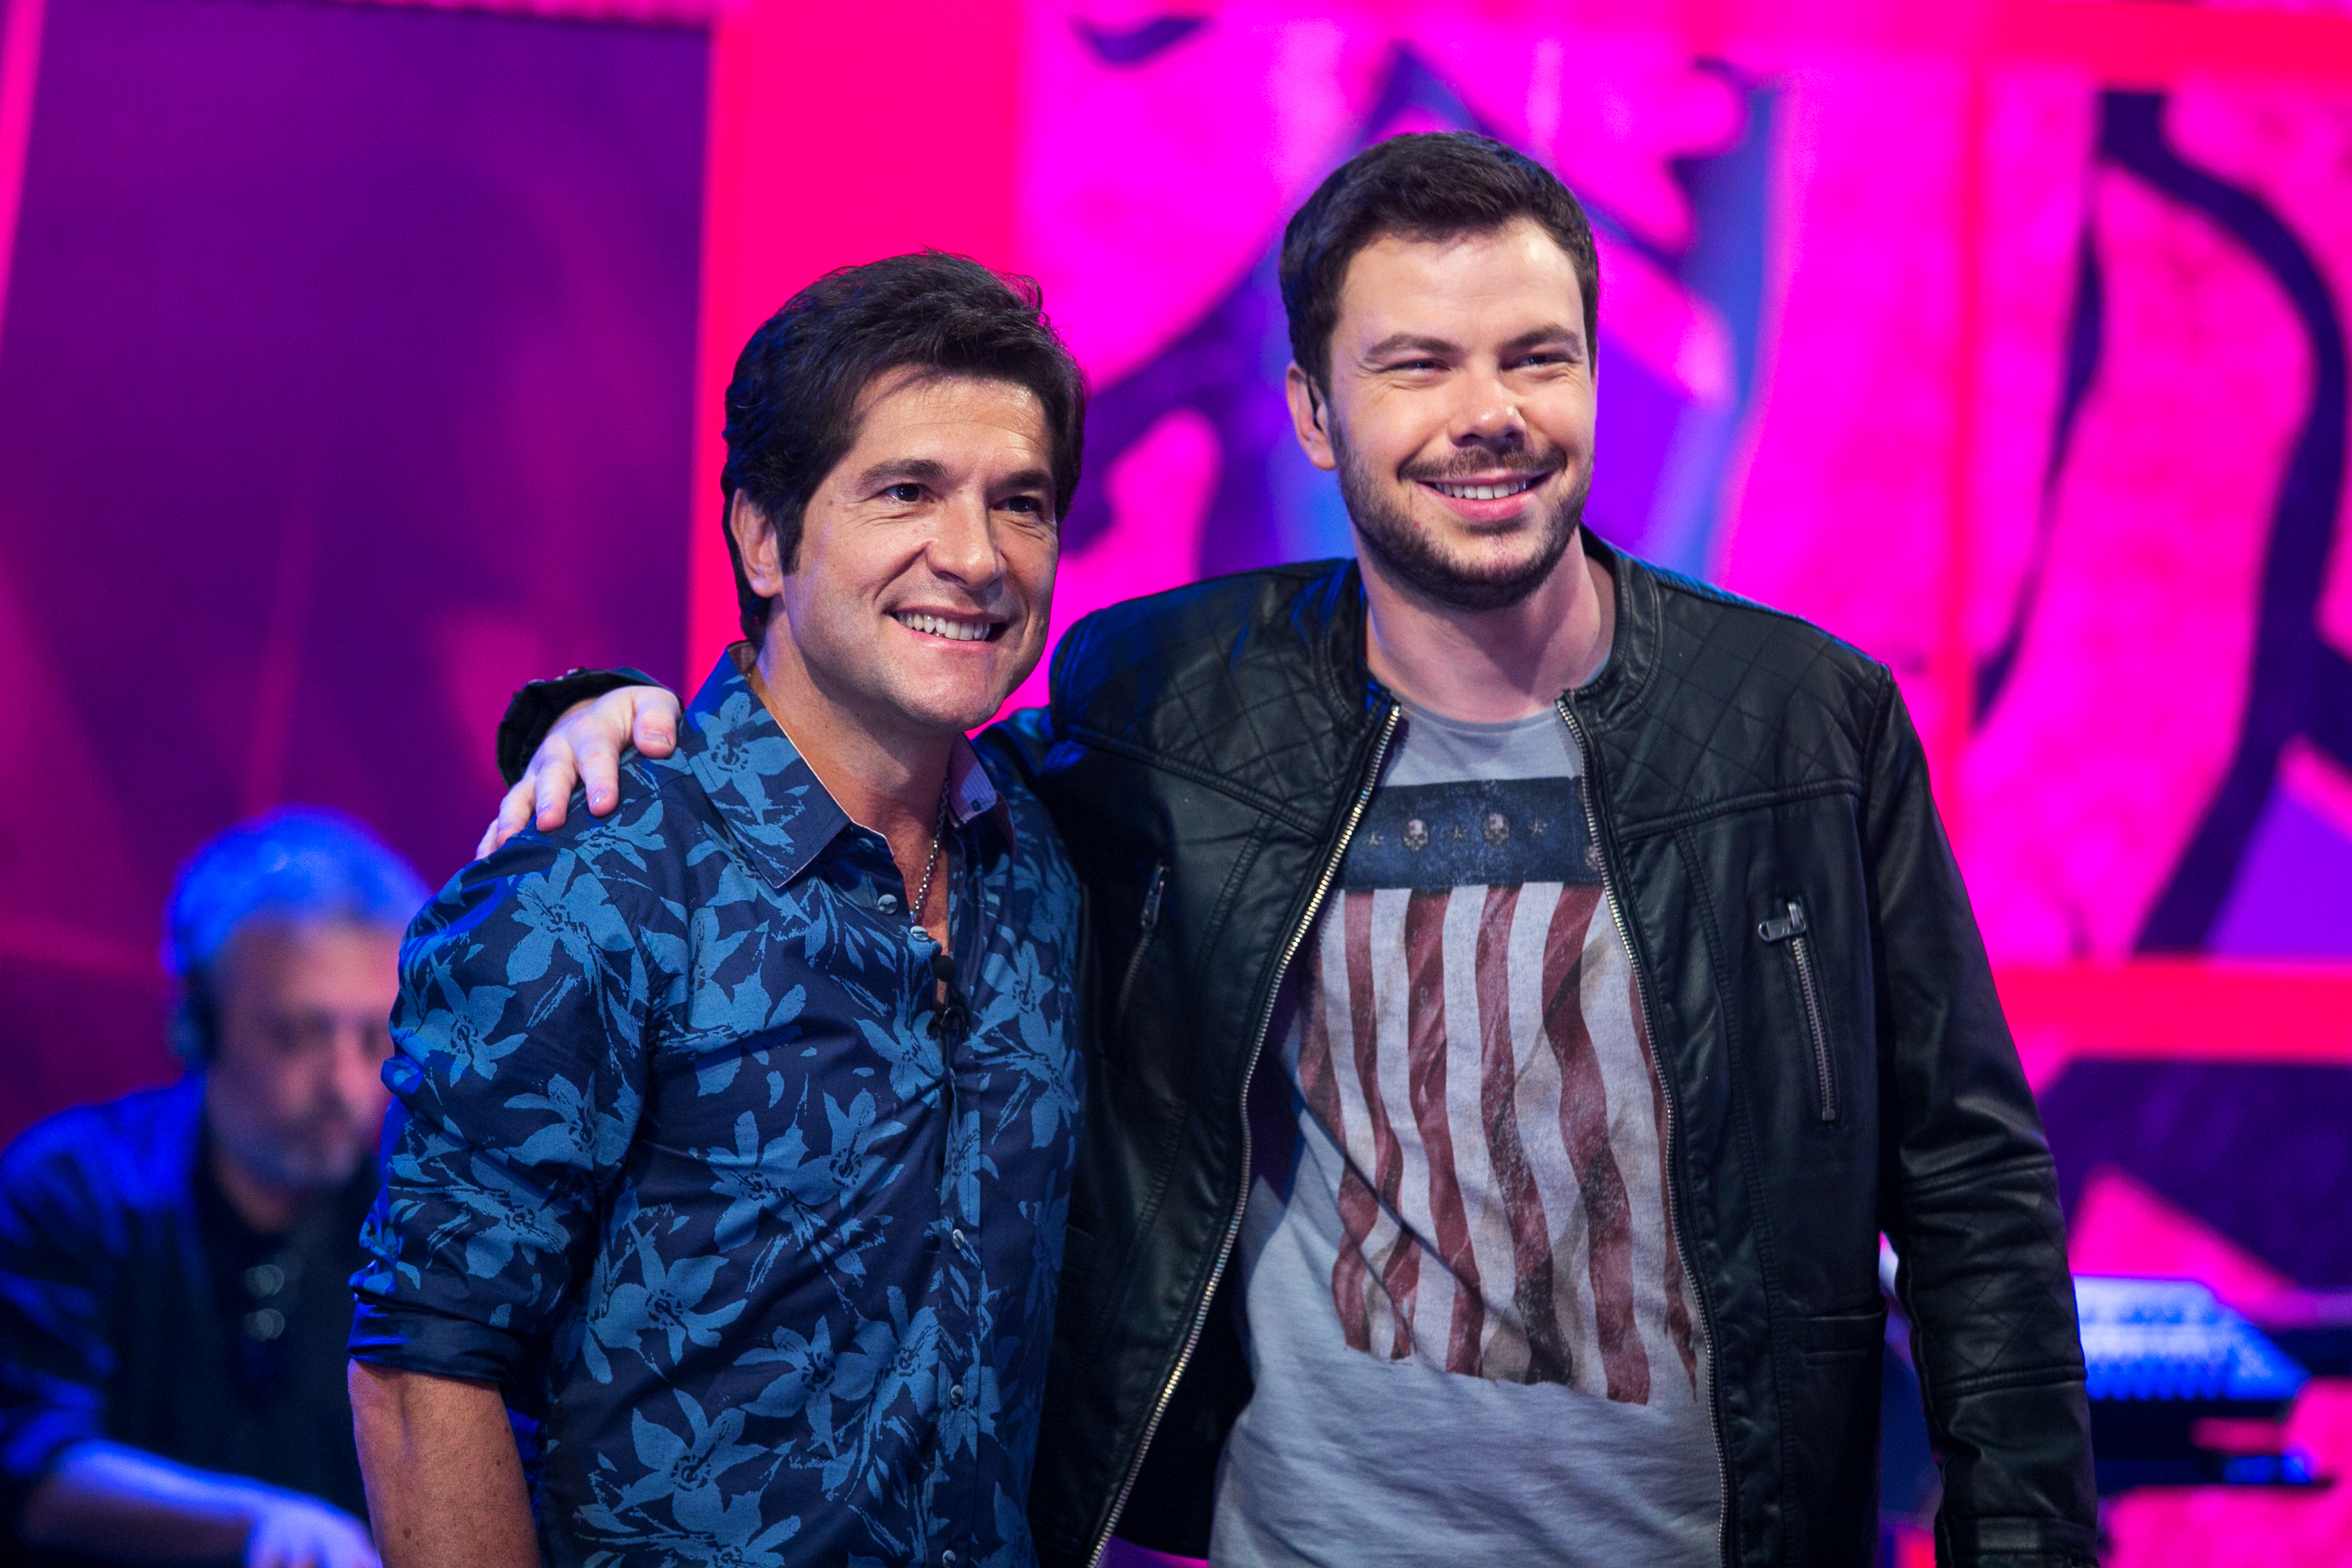 Nos estúdios do The Voice Brasil, Gustavo Trebien faz pose ao lado do técnico Daniel